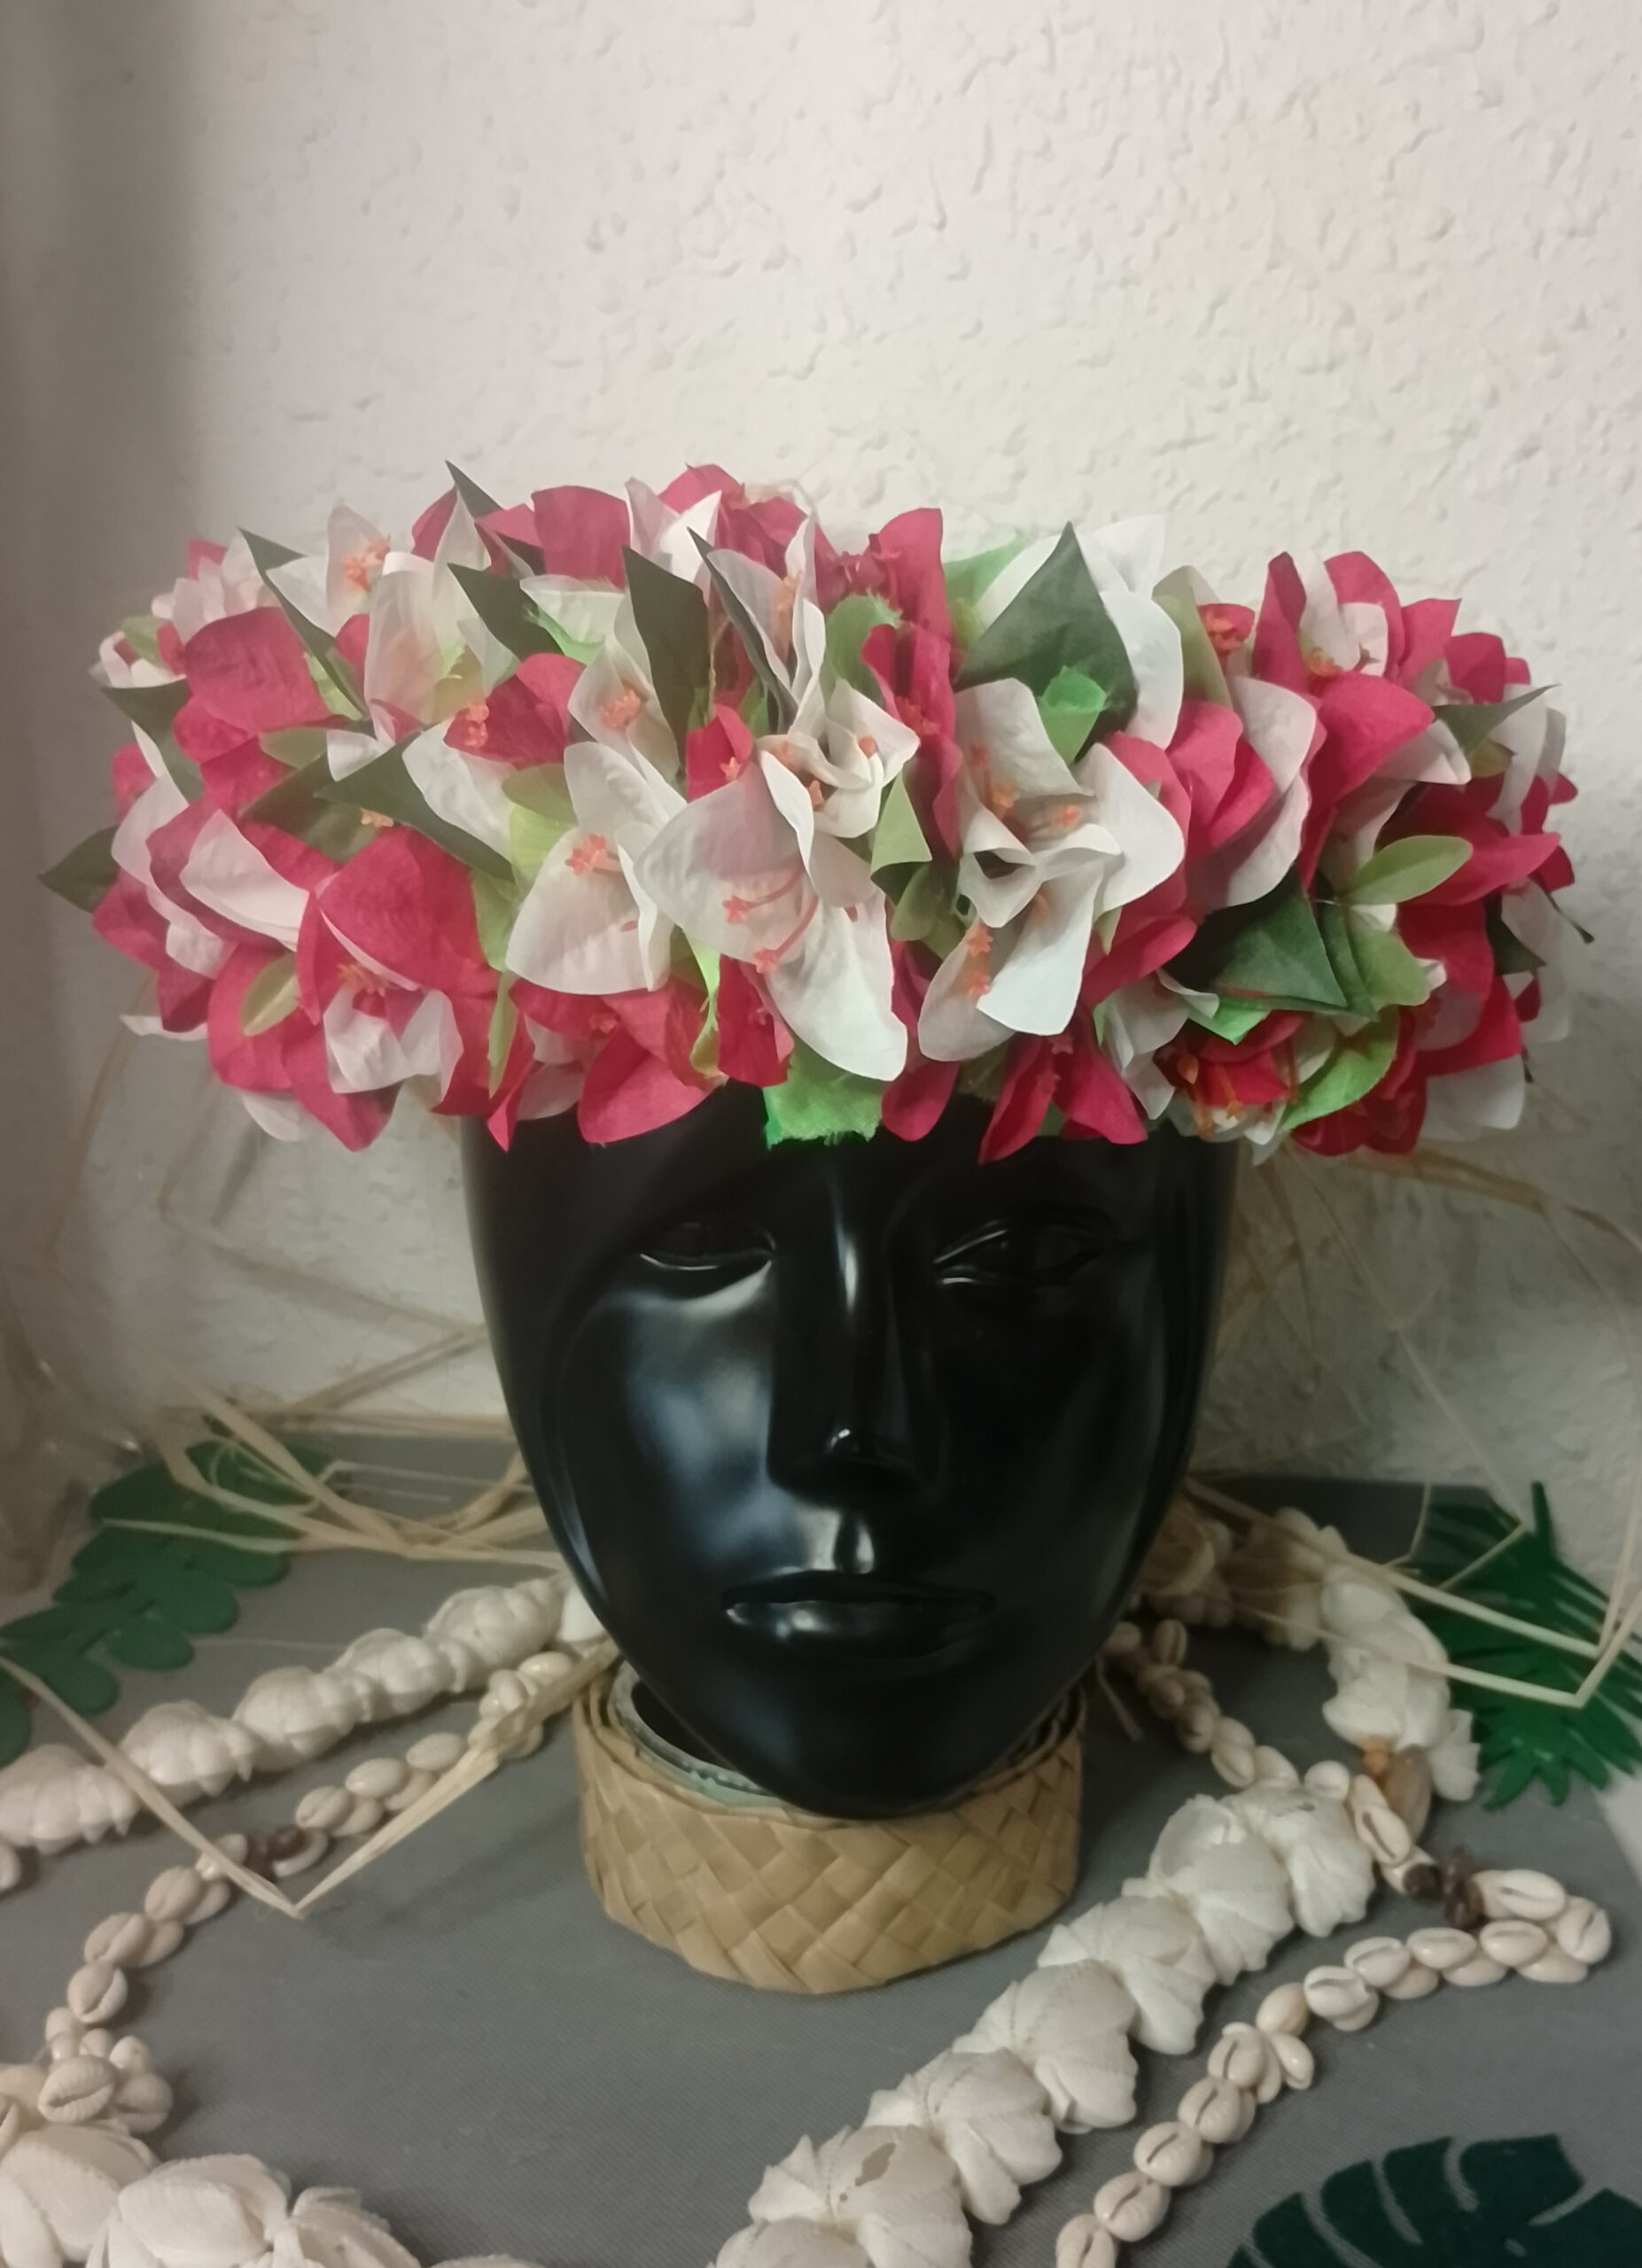 couronne toutes fleurs Tahiti bougainvilliers rouges et blancs dans leur feuillage by Vaite.e.Tiare créations